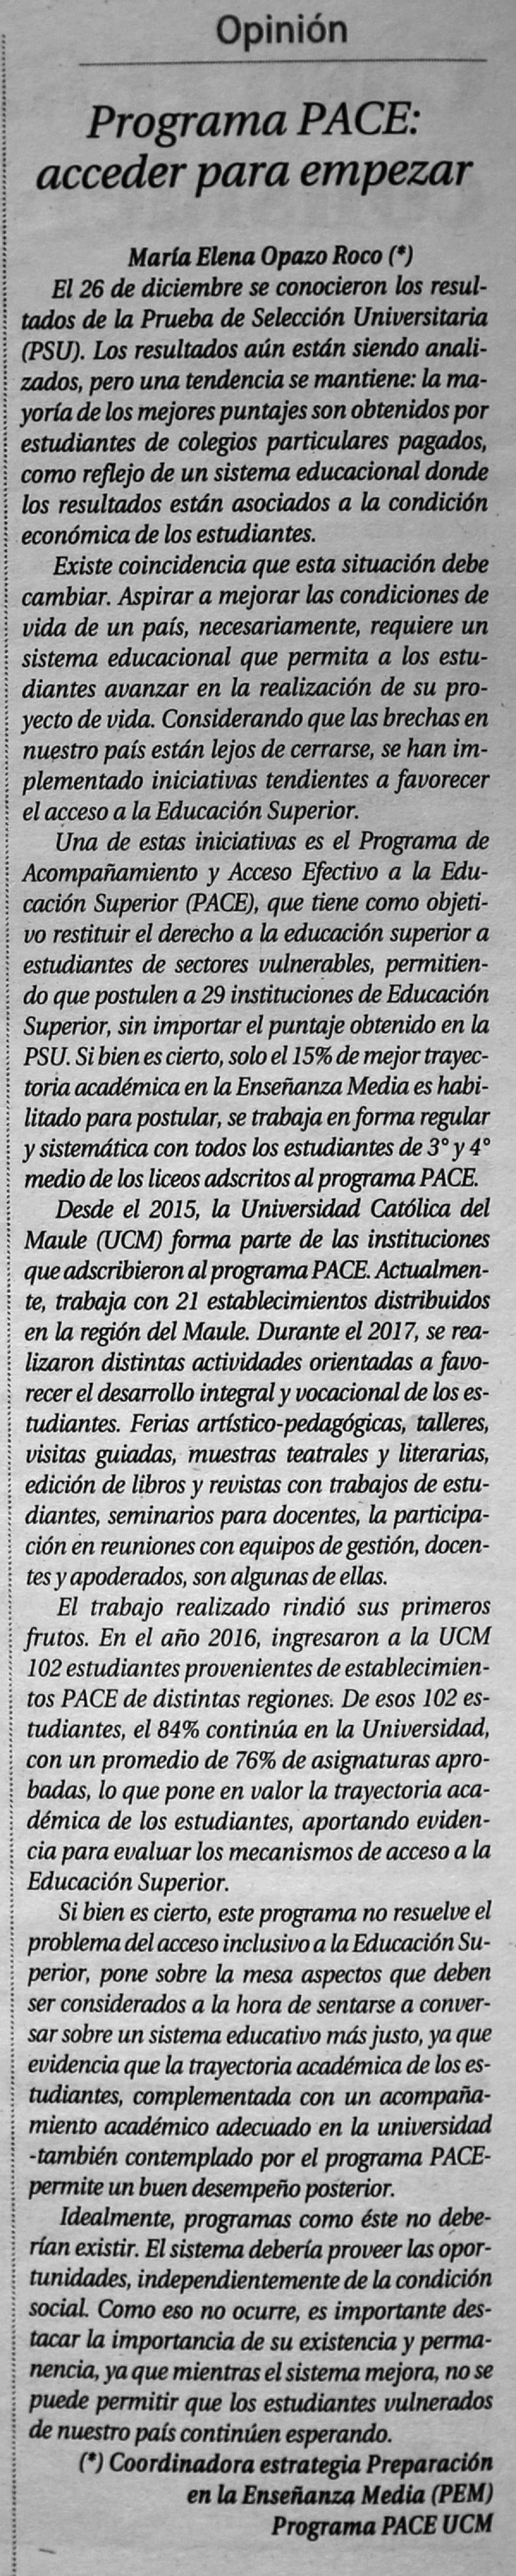 12 de enero en Diario El Centro: “Programa PACE: acceder para empezar”